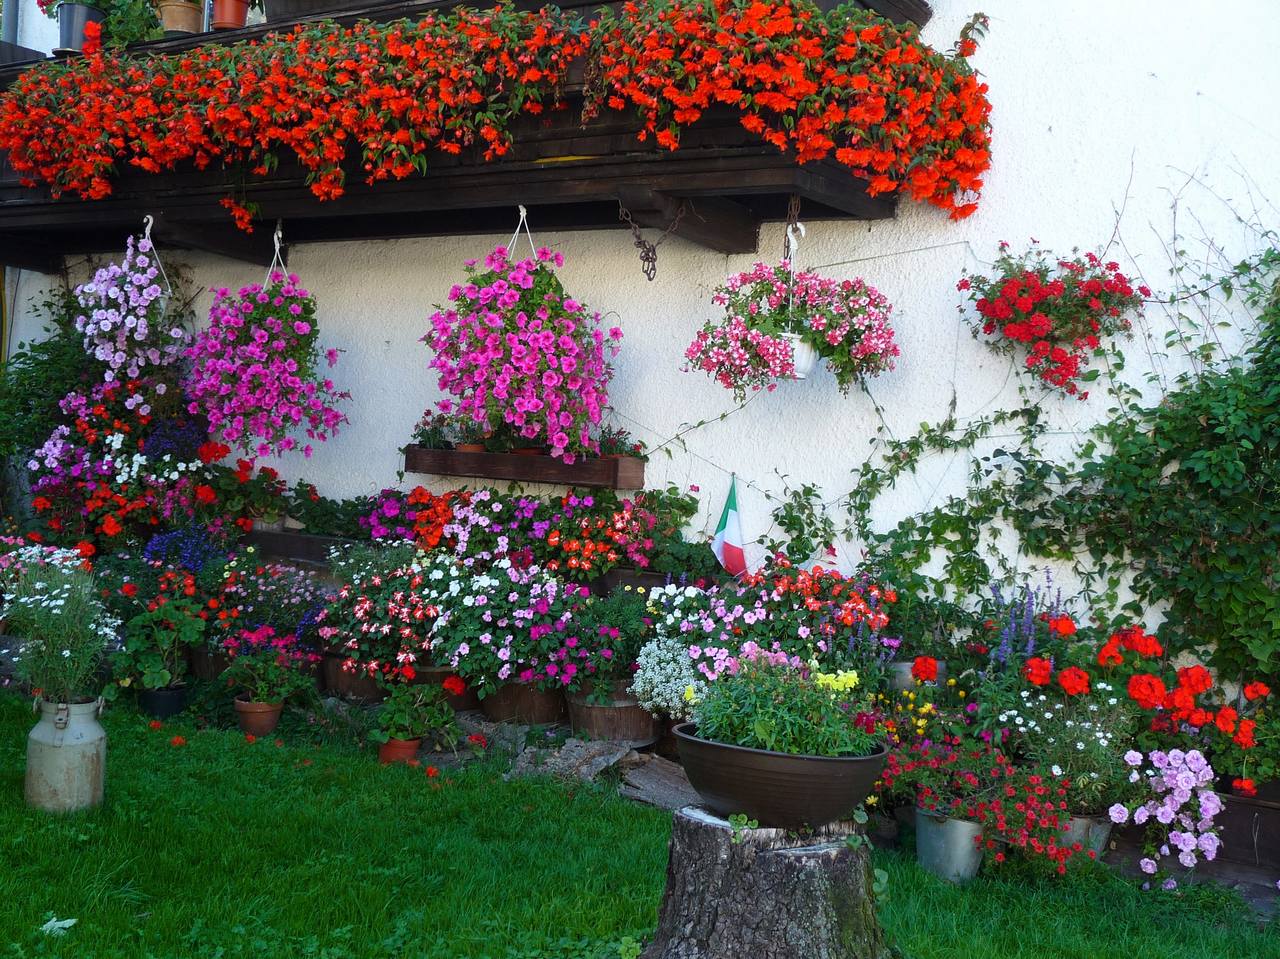 Как красиво посадить цветы в палисаднике перед домом в деревне фото и название